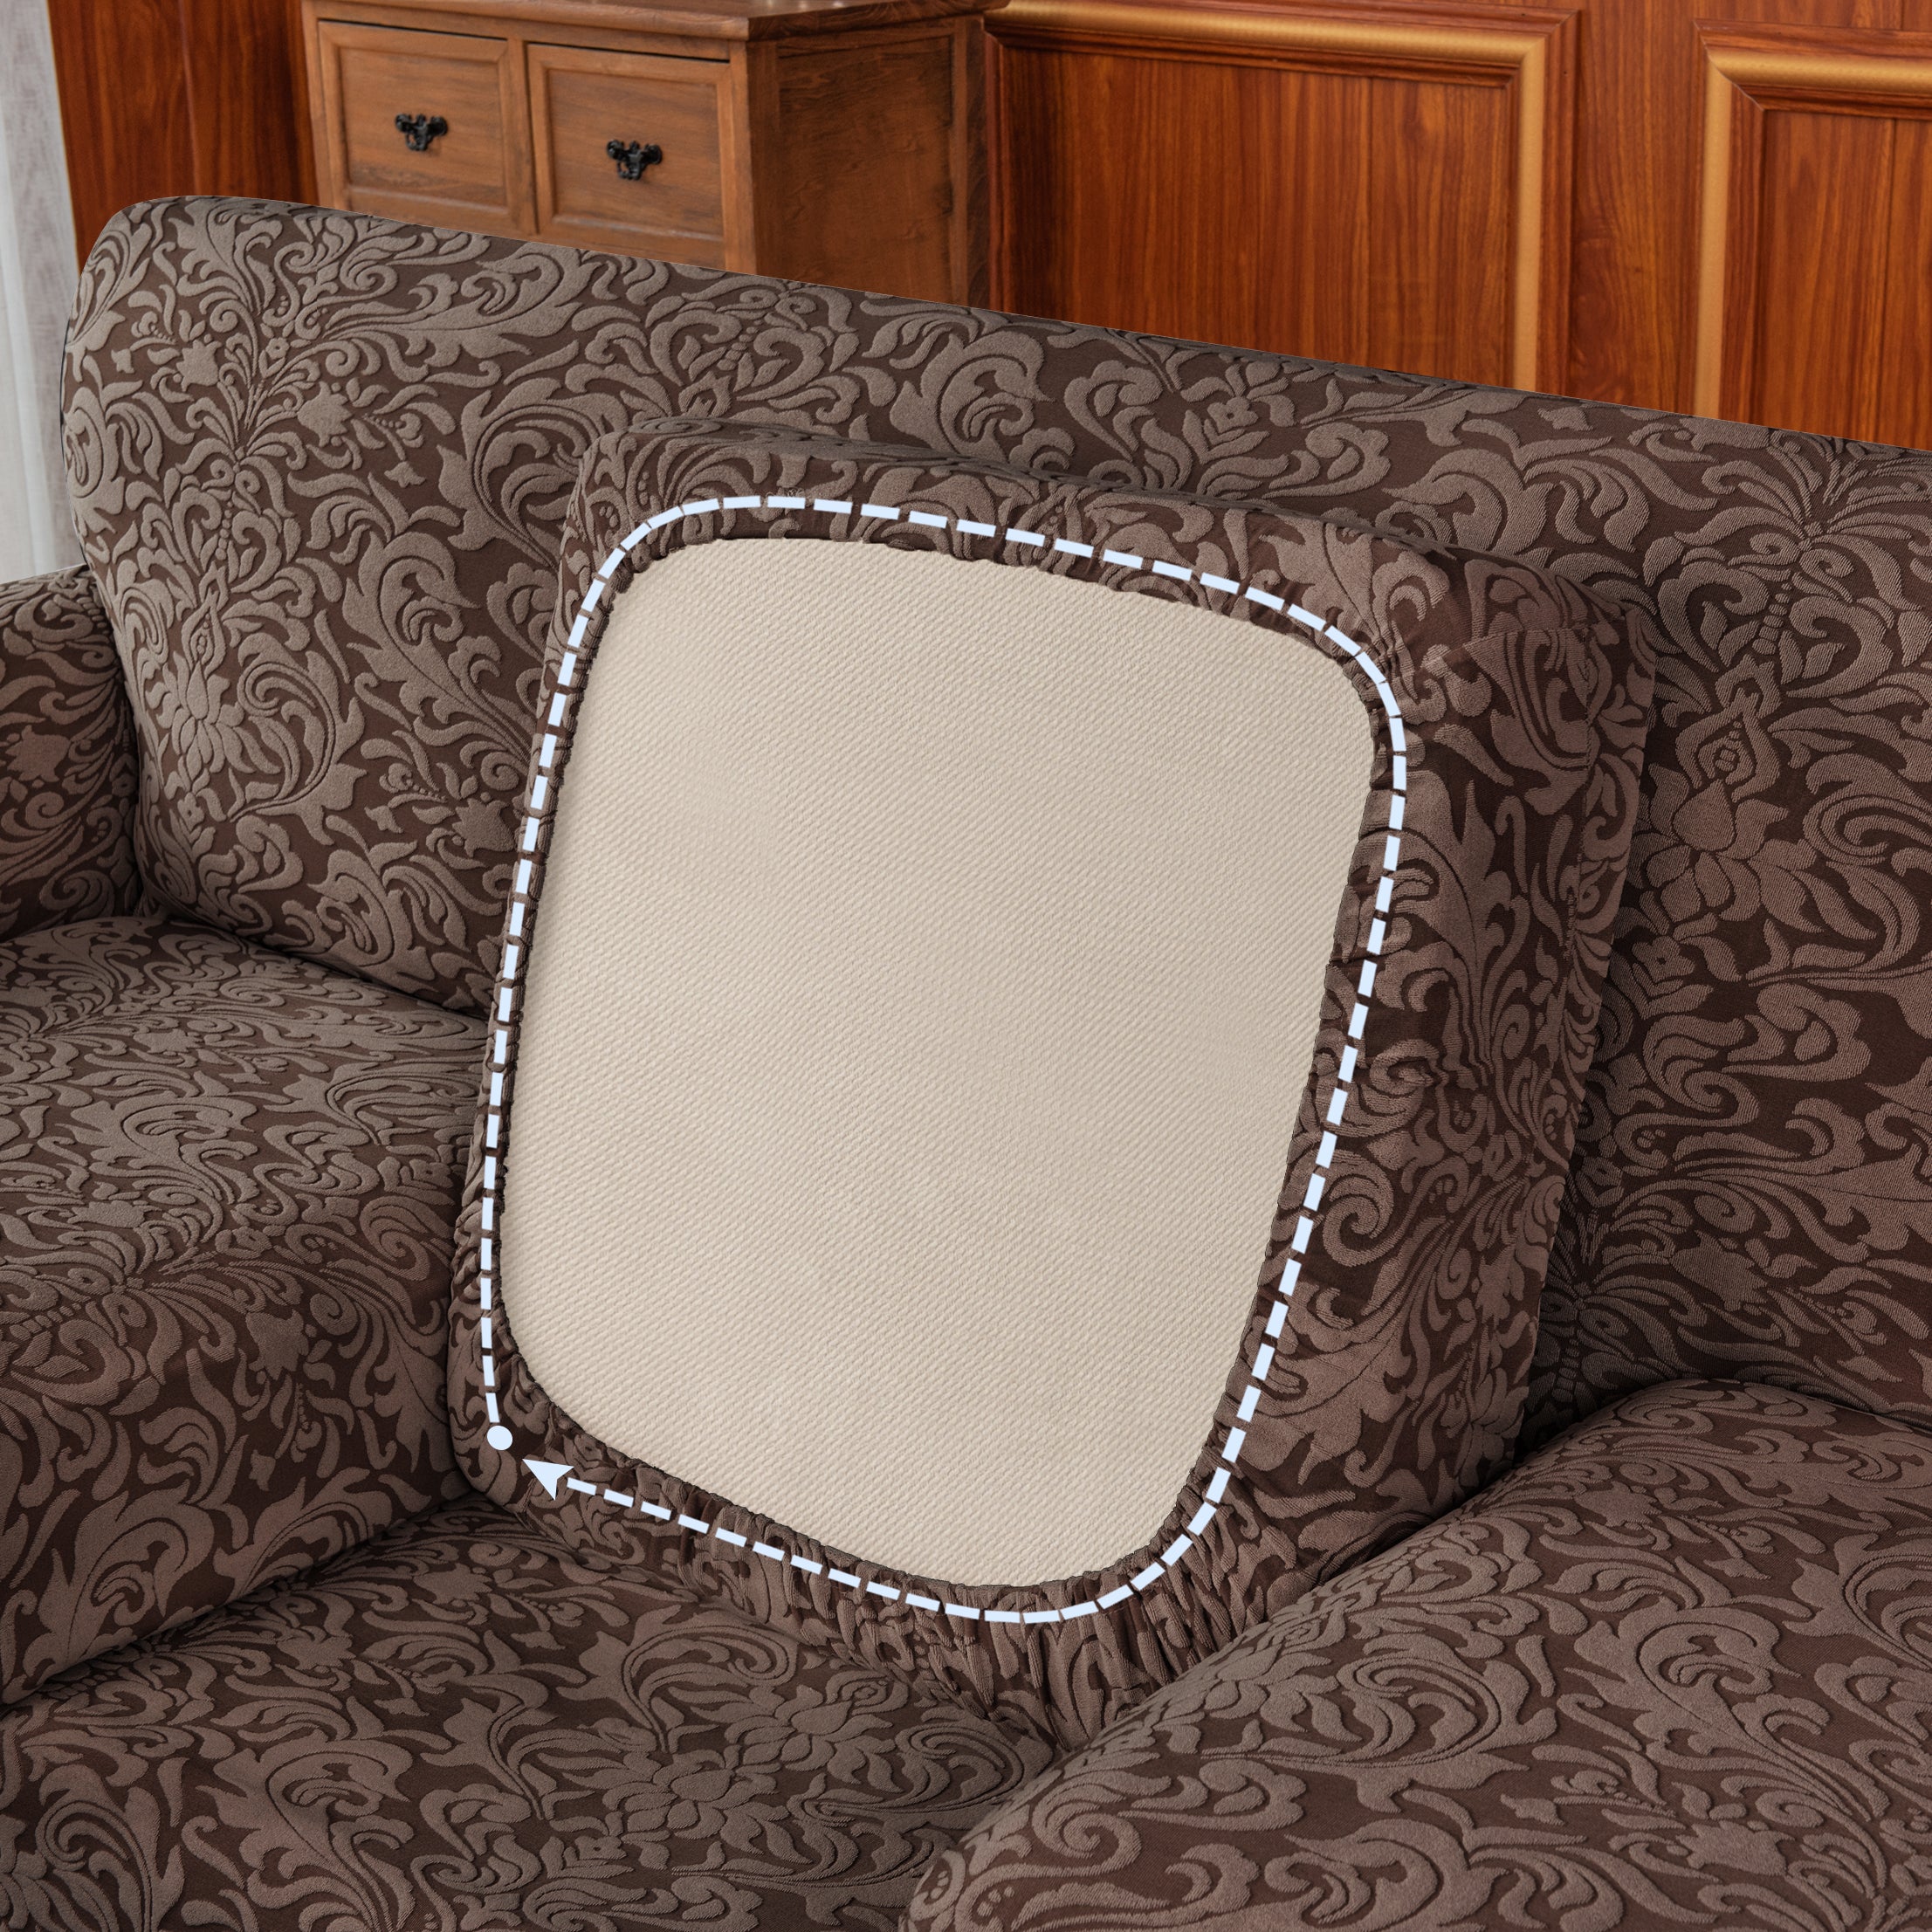 Barry Grayish Jacquard Stretch Sofa Cover